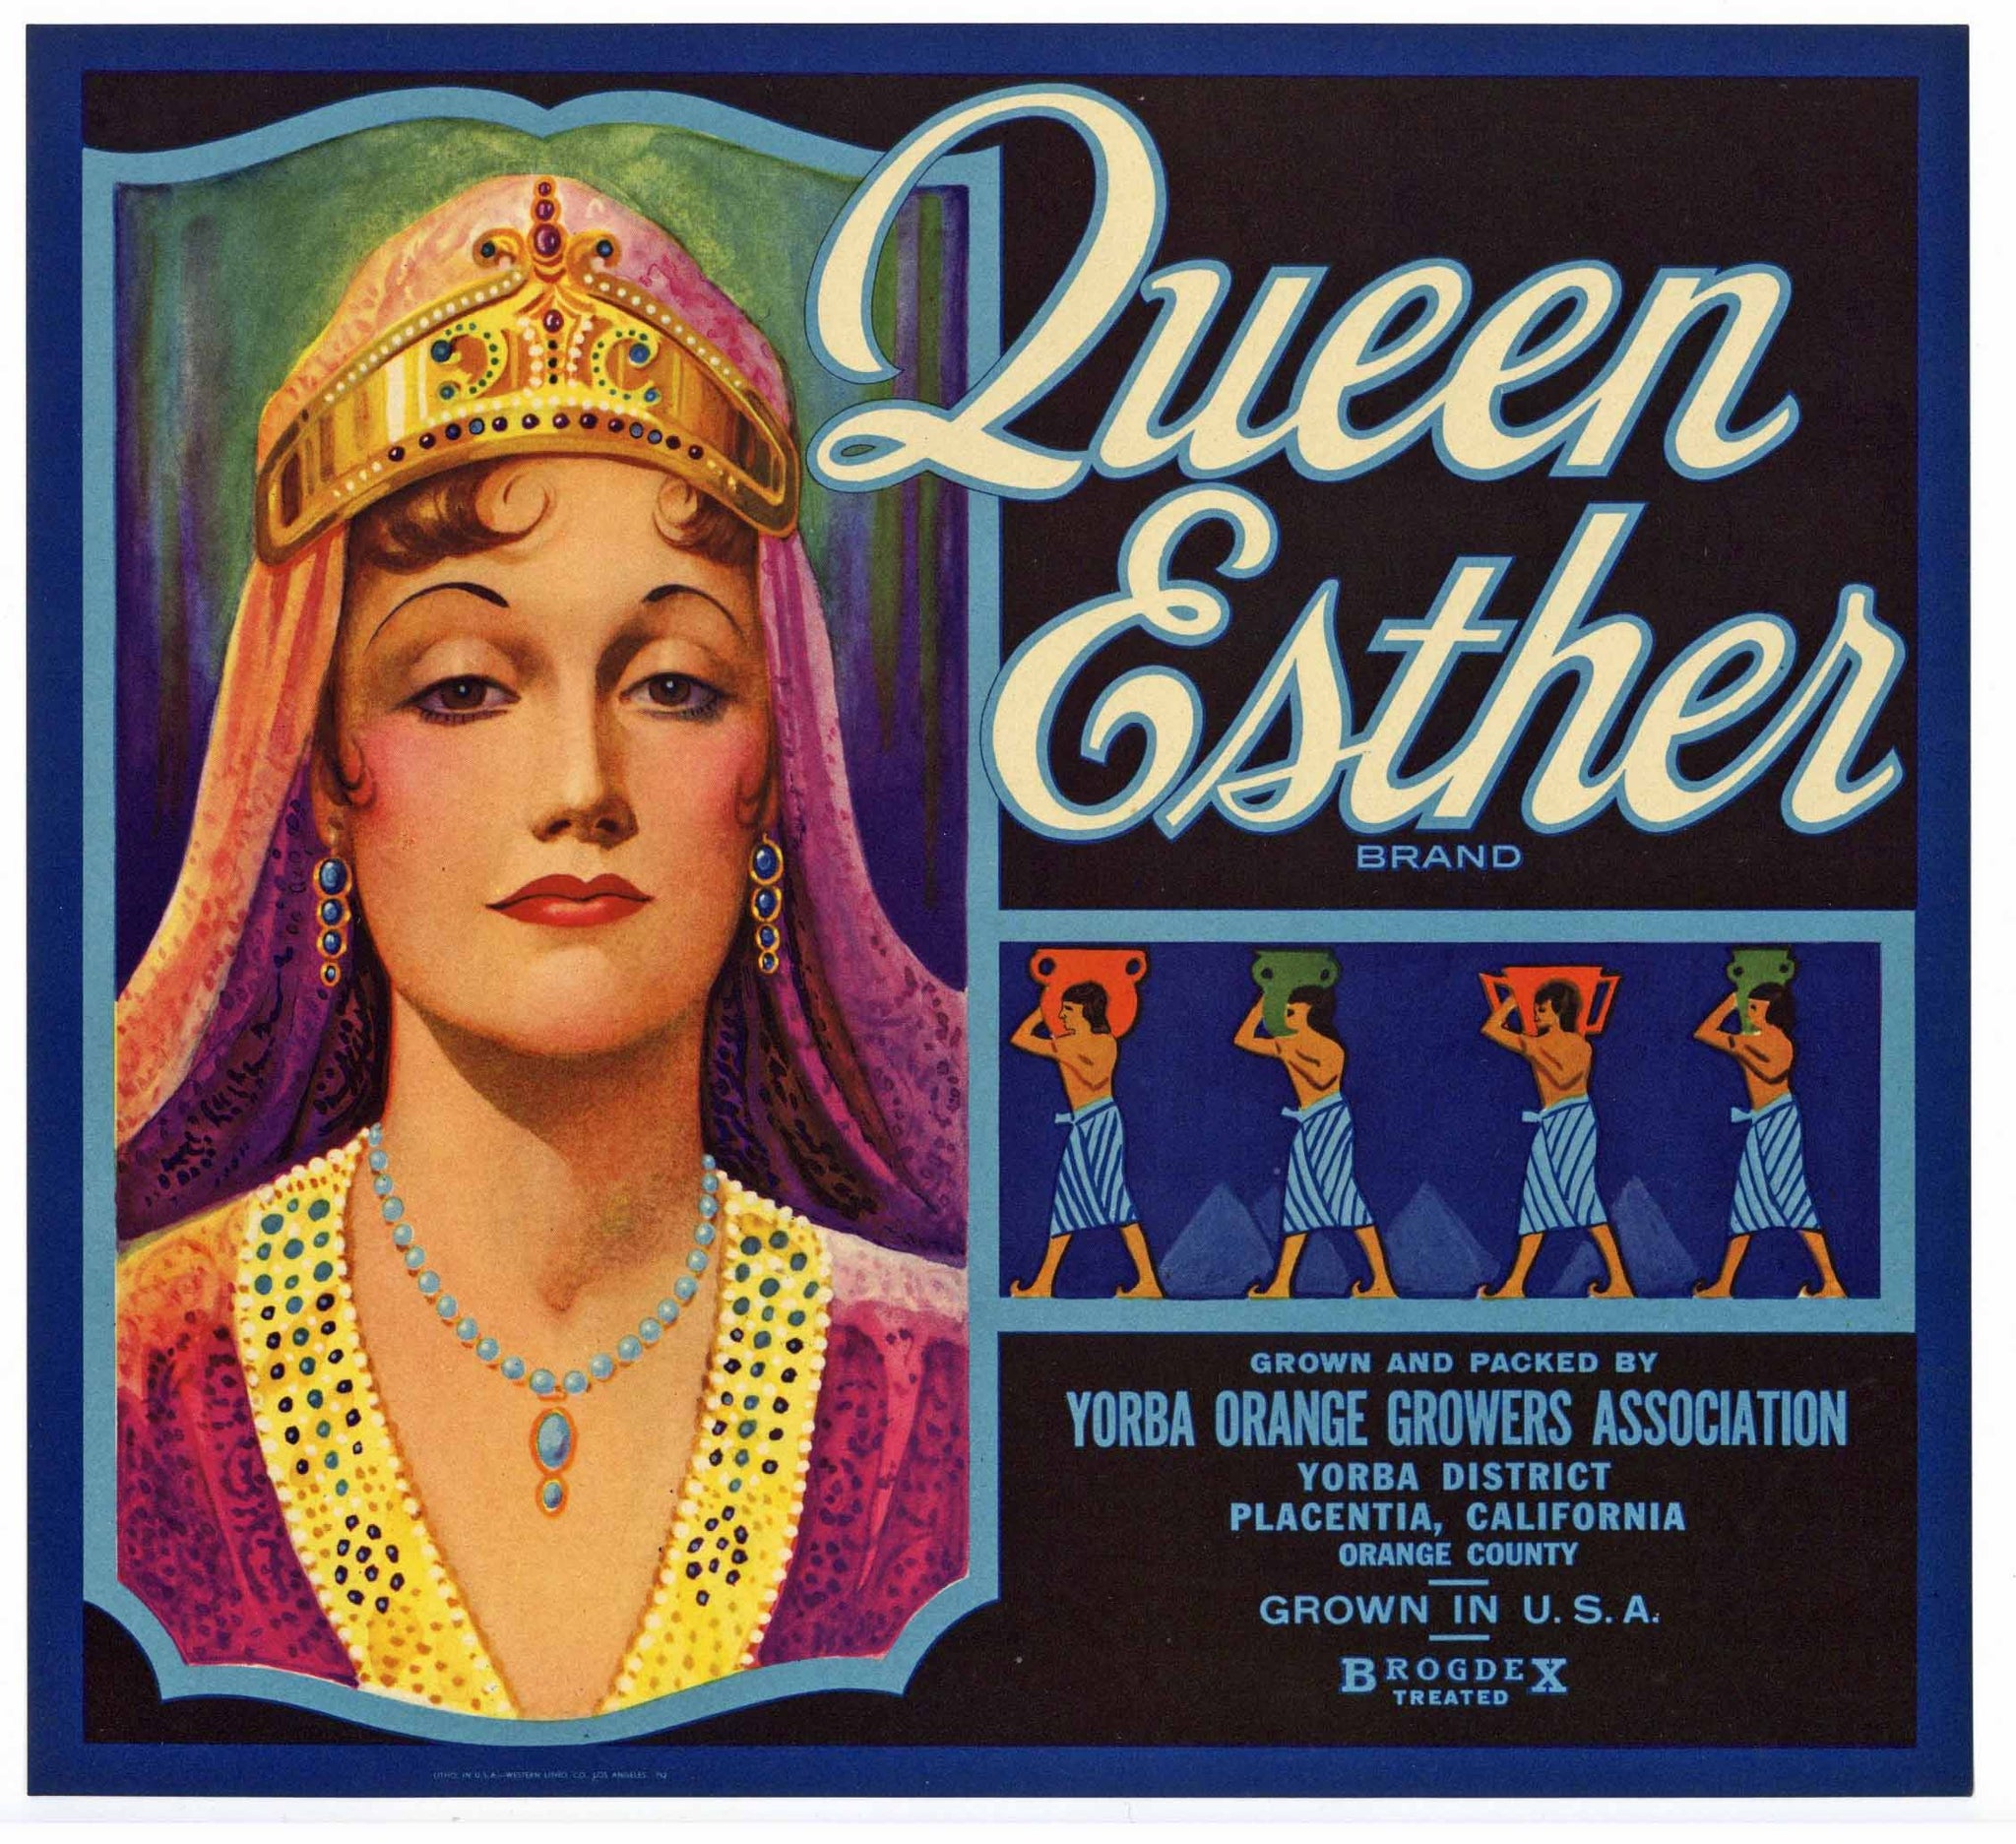 Queen Esther Brand Vintage Placentia Orange Crate Label